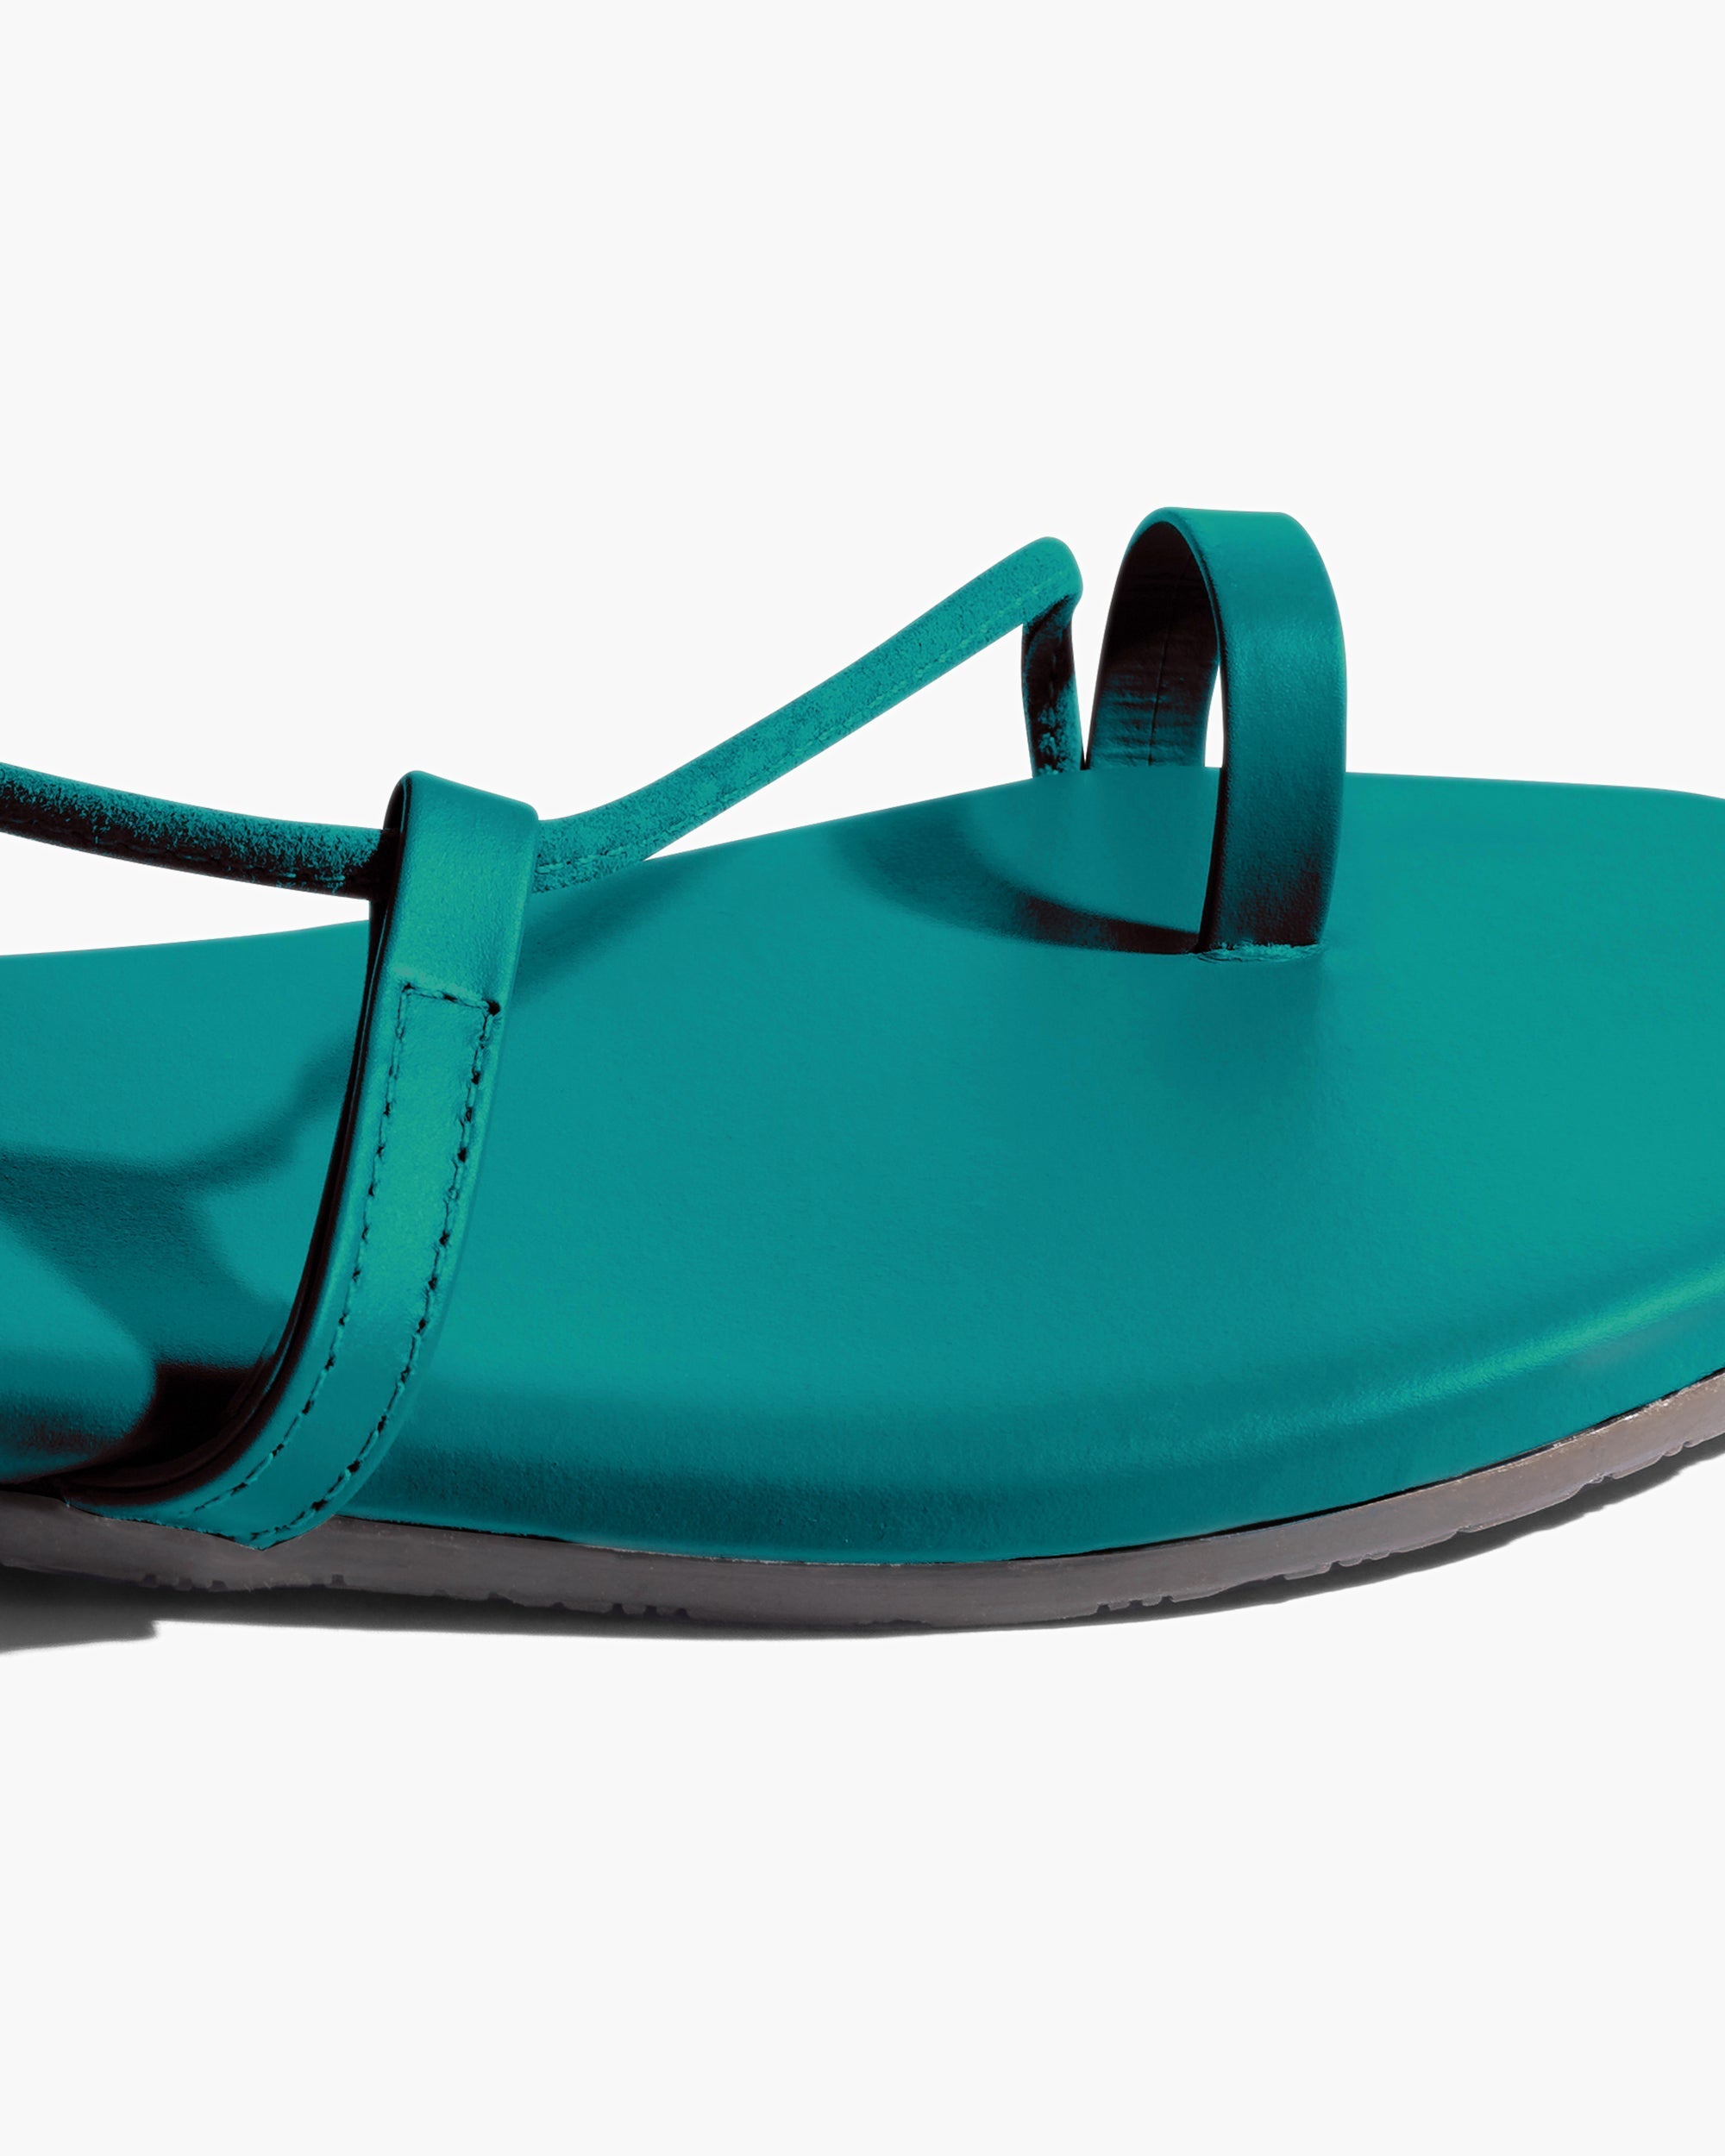 Turquoise Women's TKEES Jo Pigments Sandals | HETVLN468